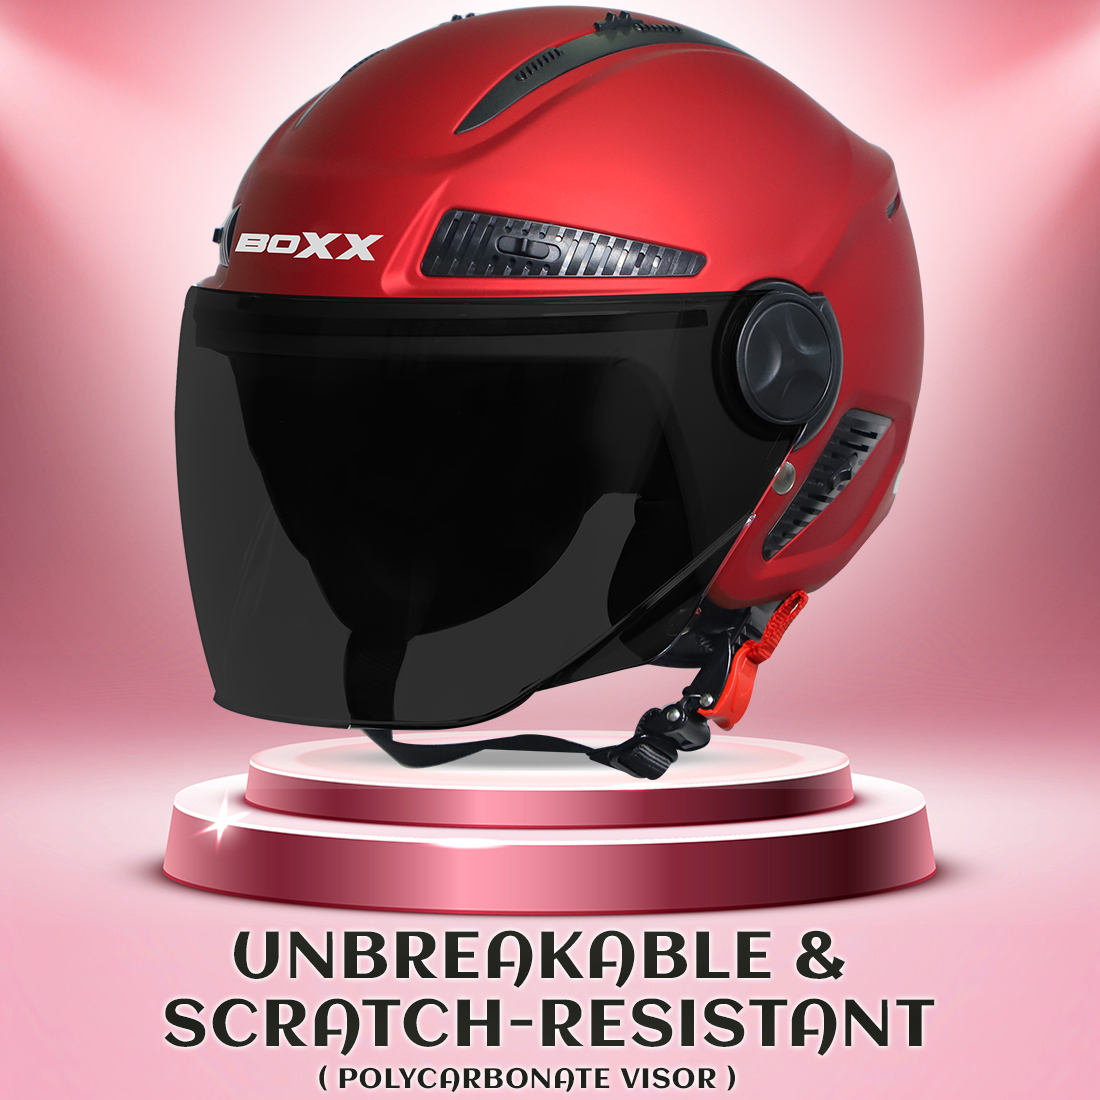 Steelbird SBH-24 Boxx ISI Certified Open Face Helmet For Men And Women (